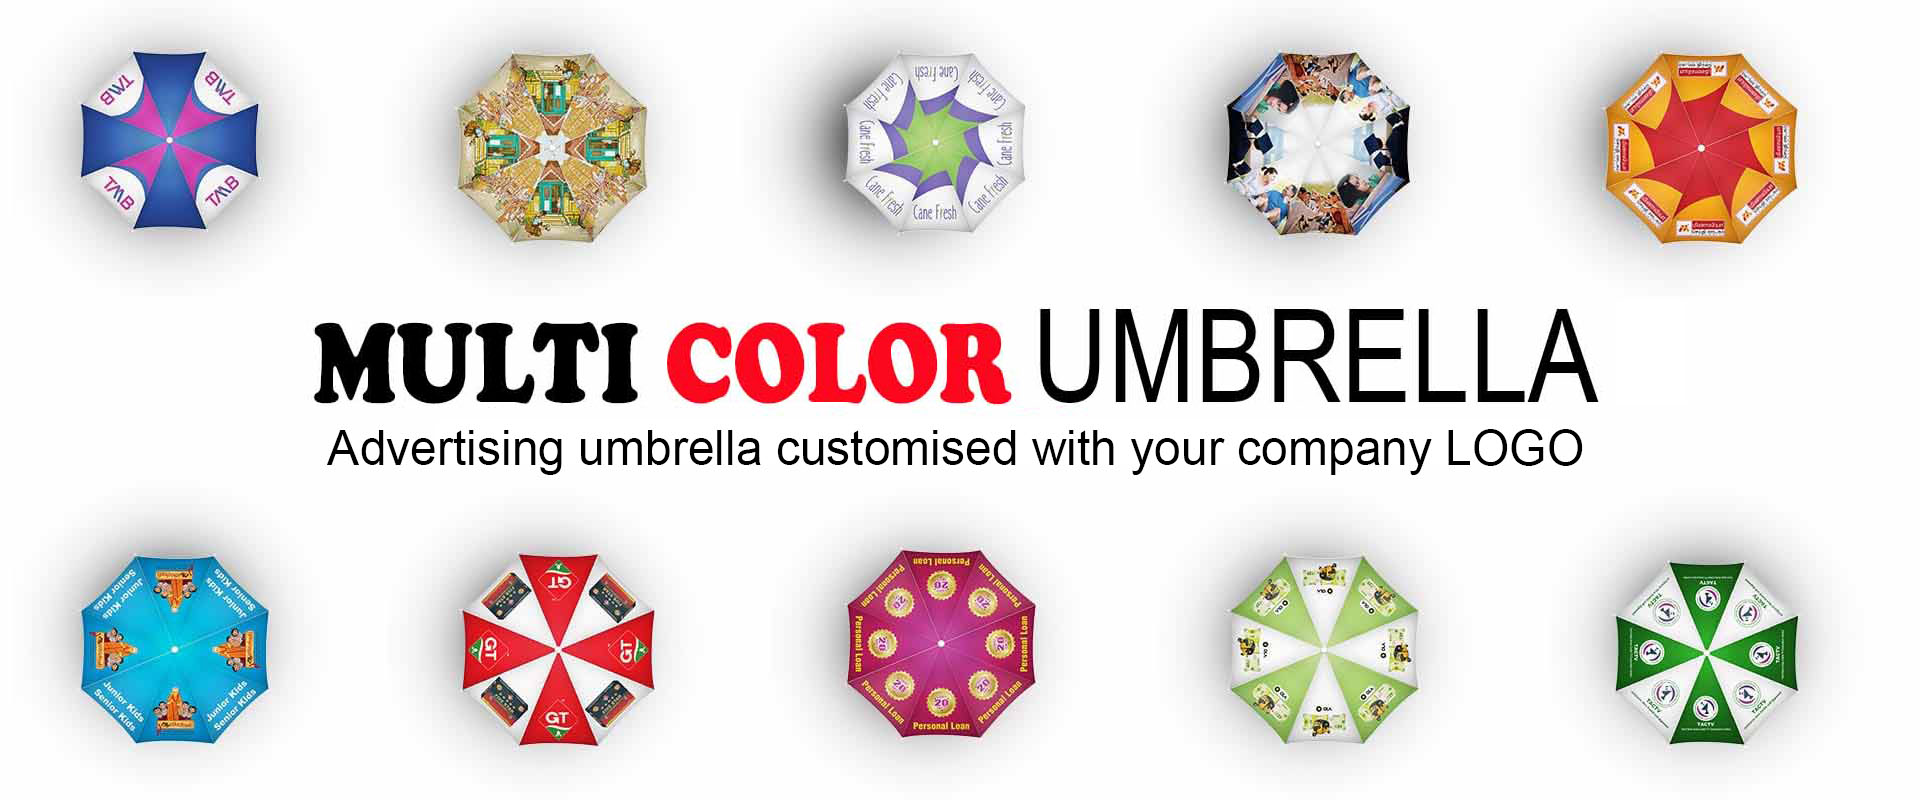 Multi Color Umbrella Printing Services in Chennai